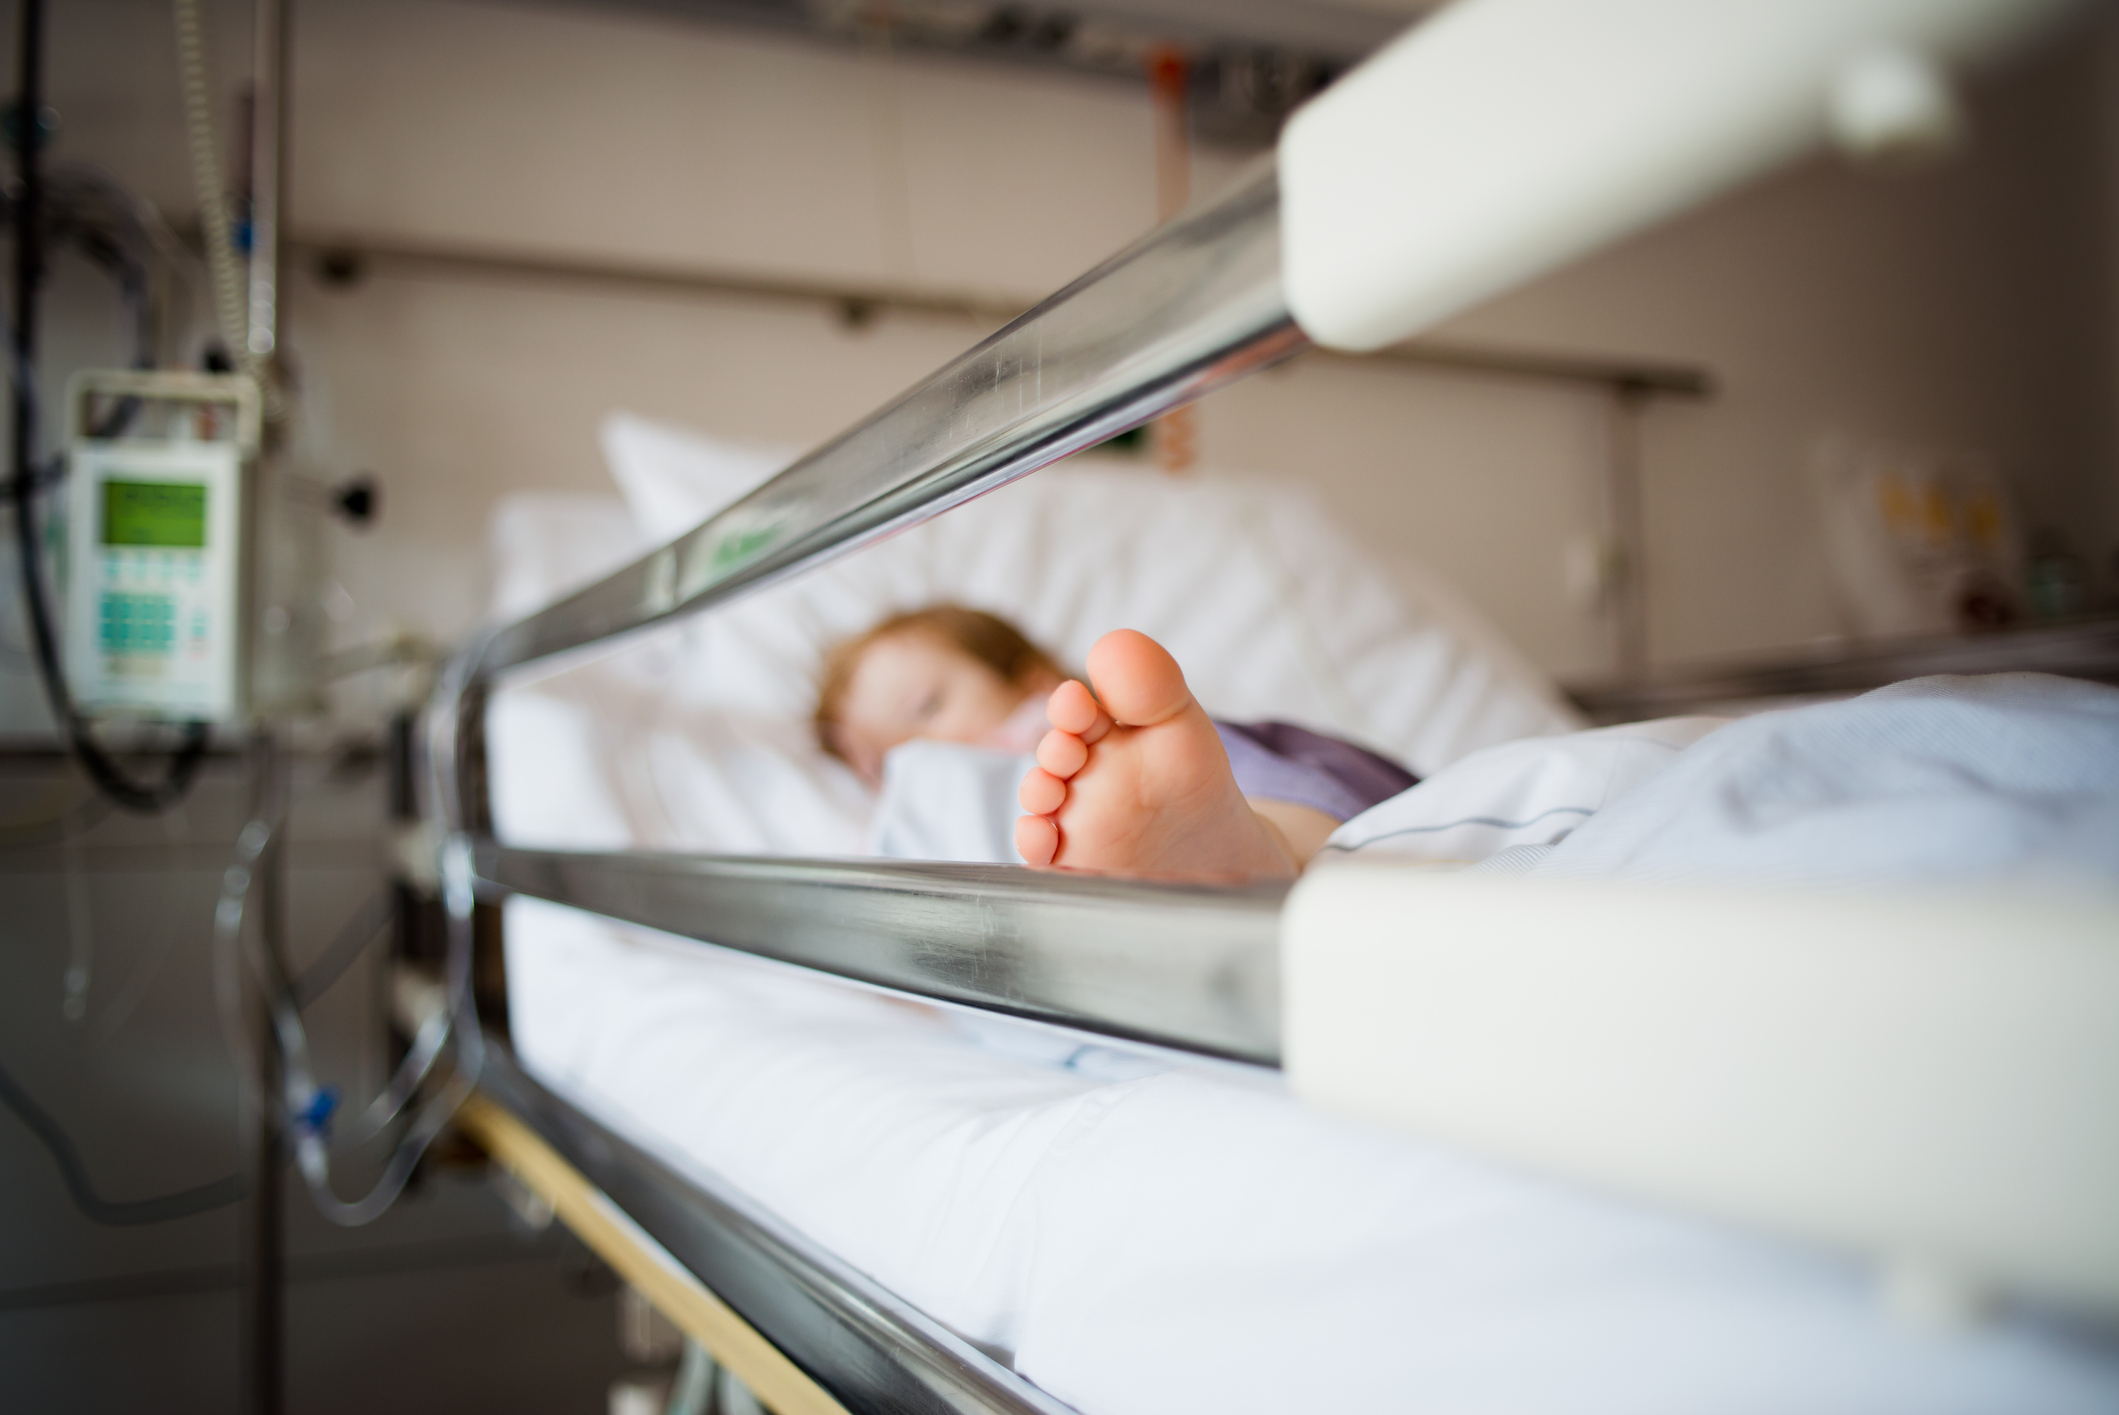 Ministerul Sănătăţii: Caz de hepatită acută severă apărut la un copil în România; starea fetiţei de 5 ani - stabilă